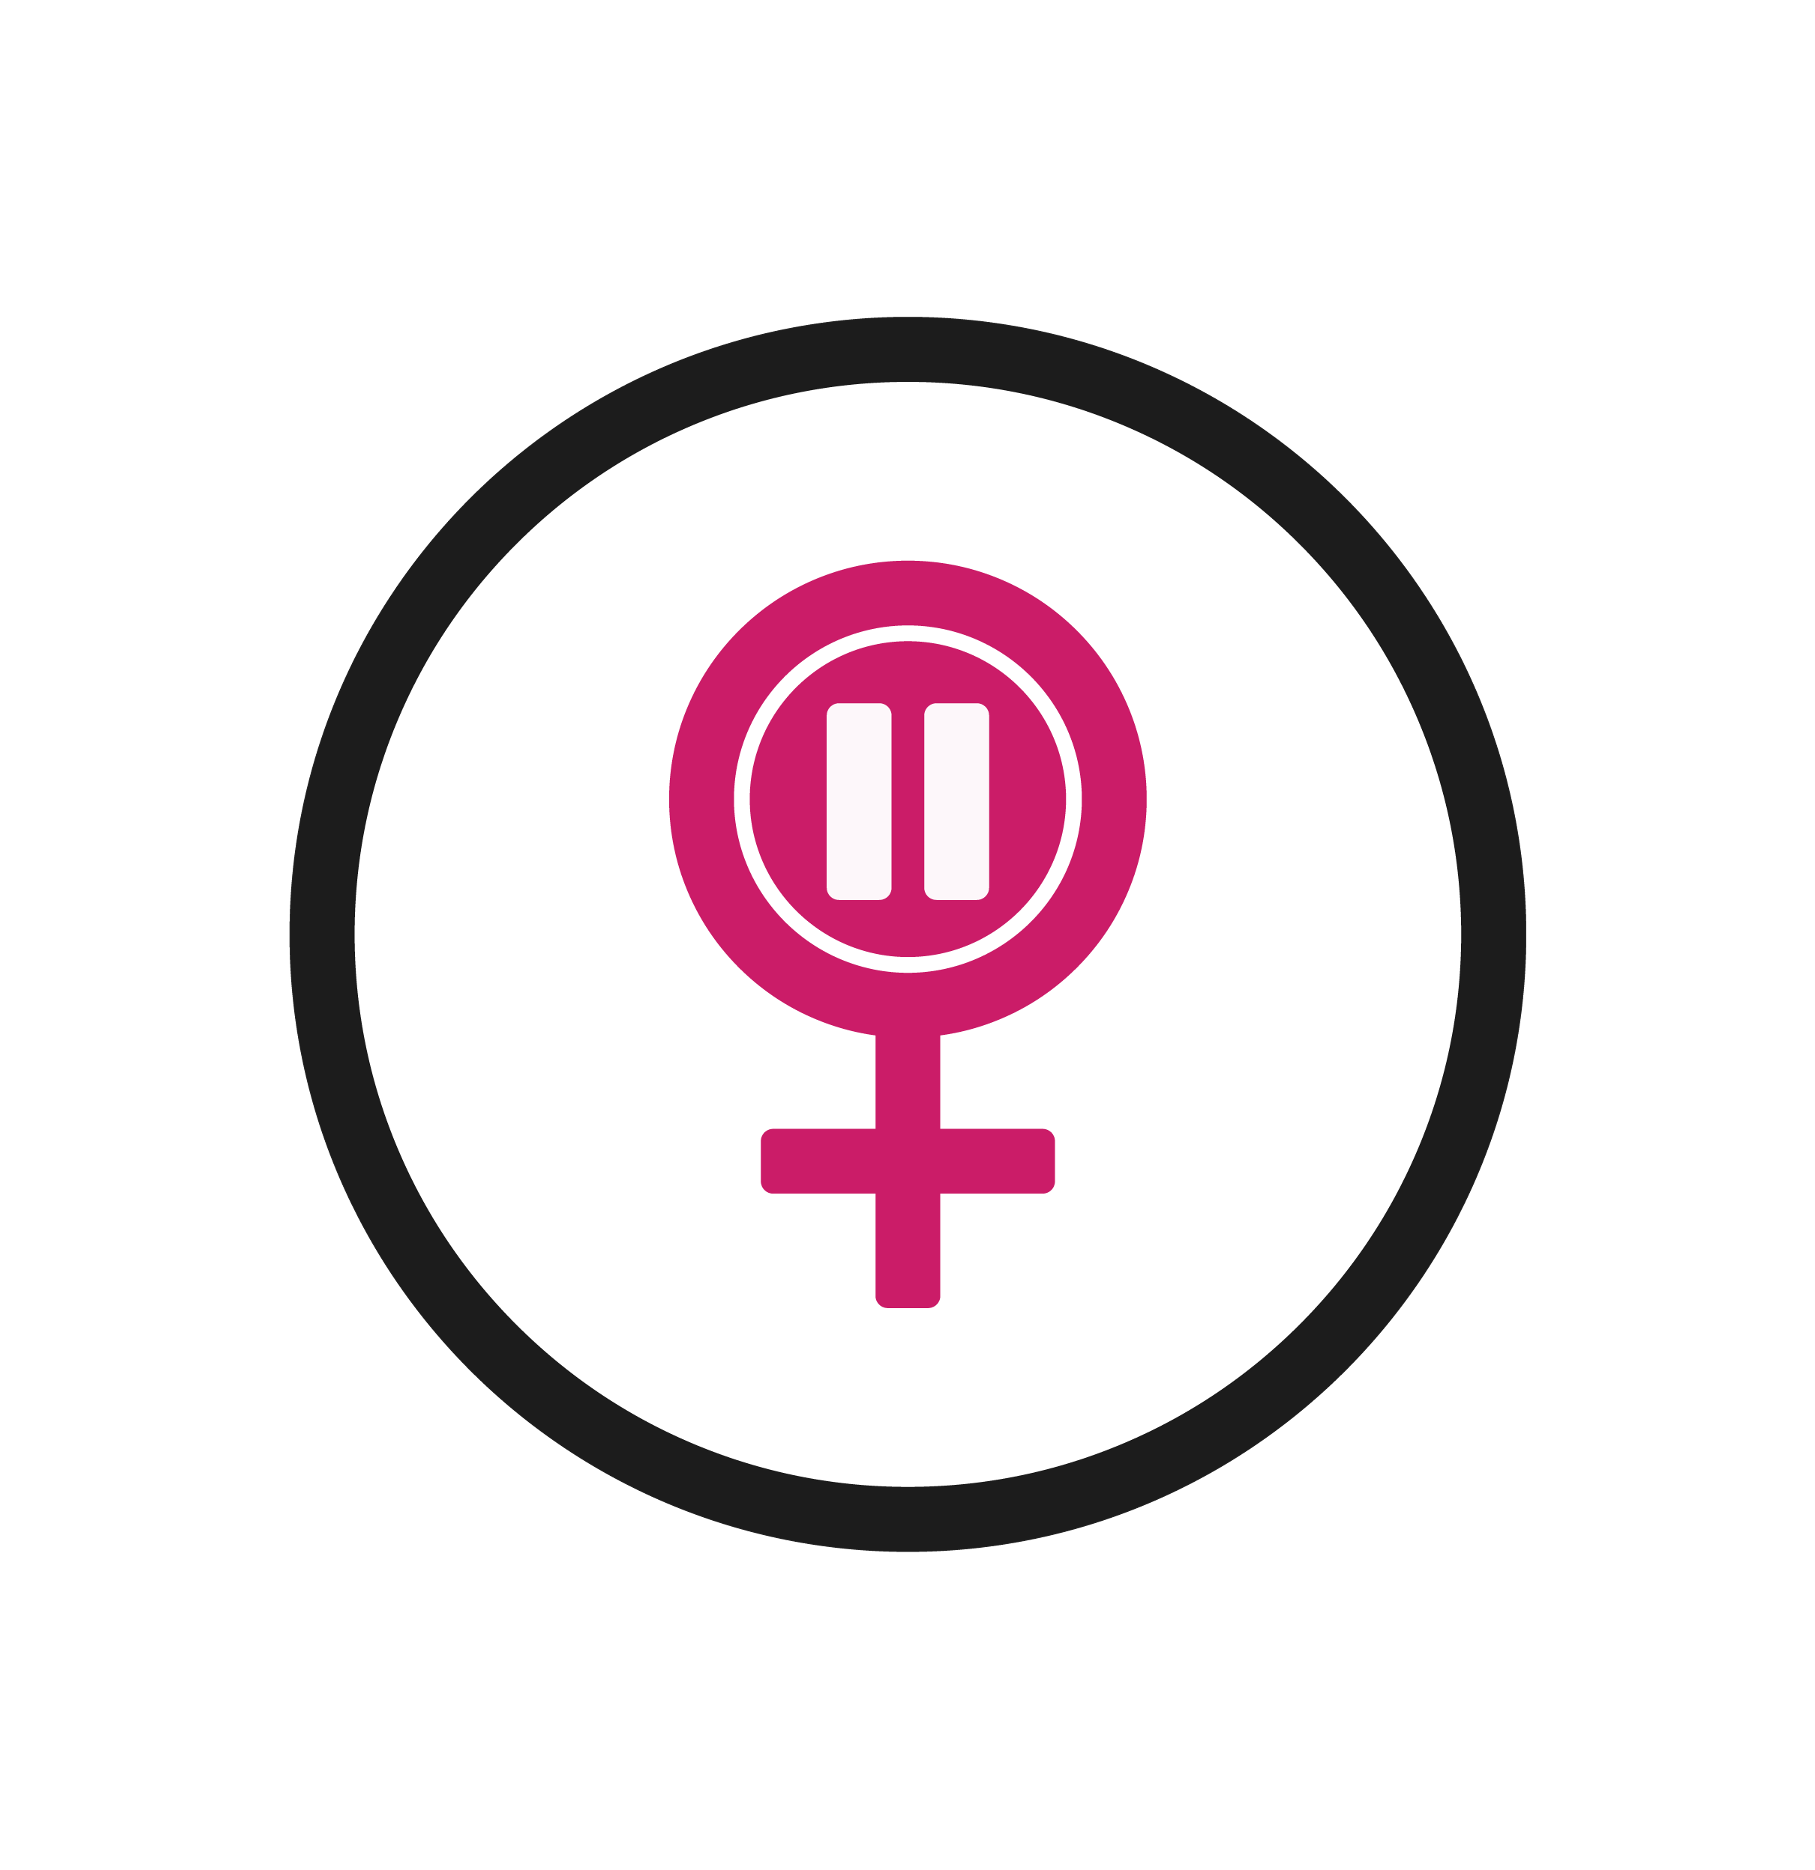 Met Office Careers - Menopause Network Icon.png